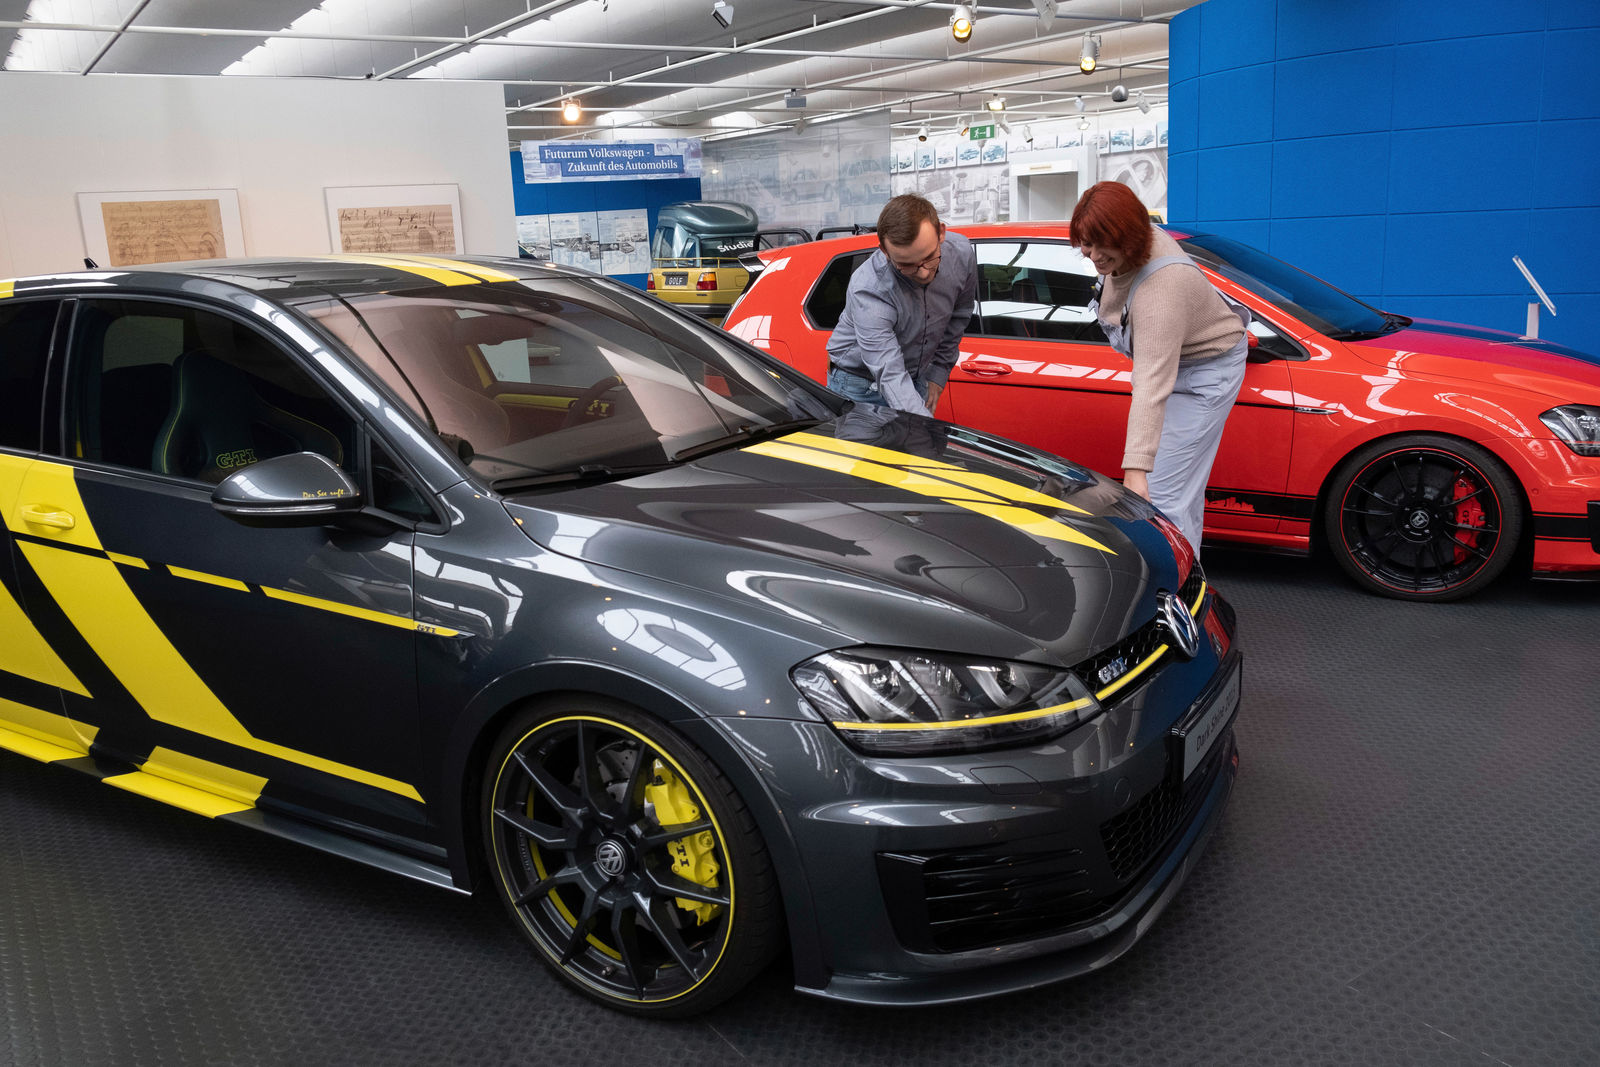 Wörthersee-GTI im AutoMuseum Volkswagen – die wohl schnellste Schau der Welt